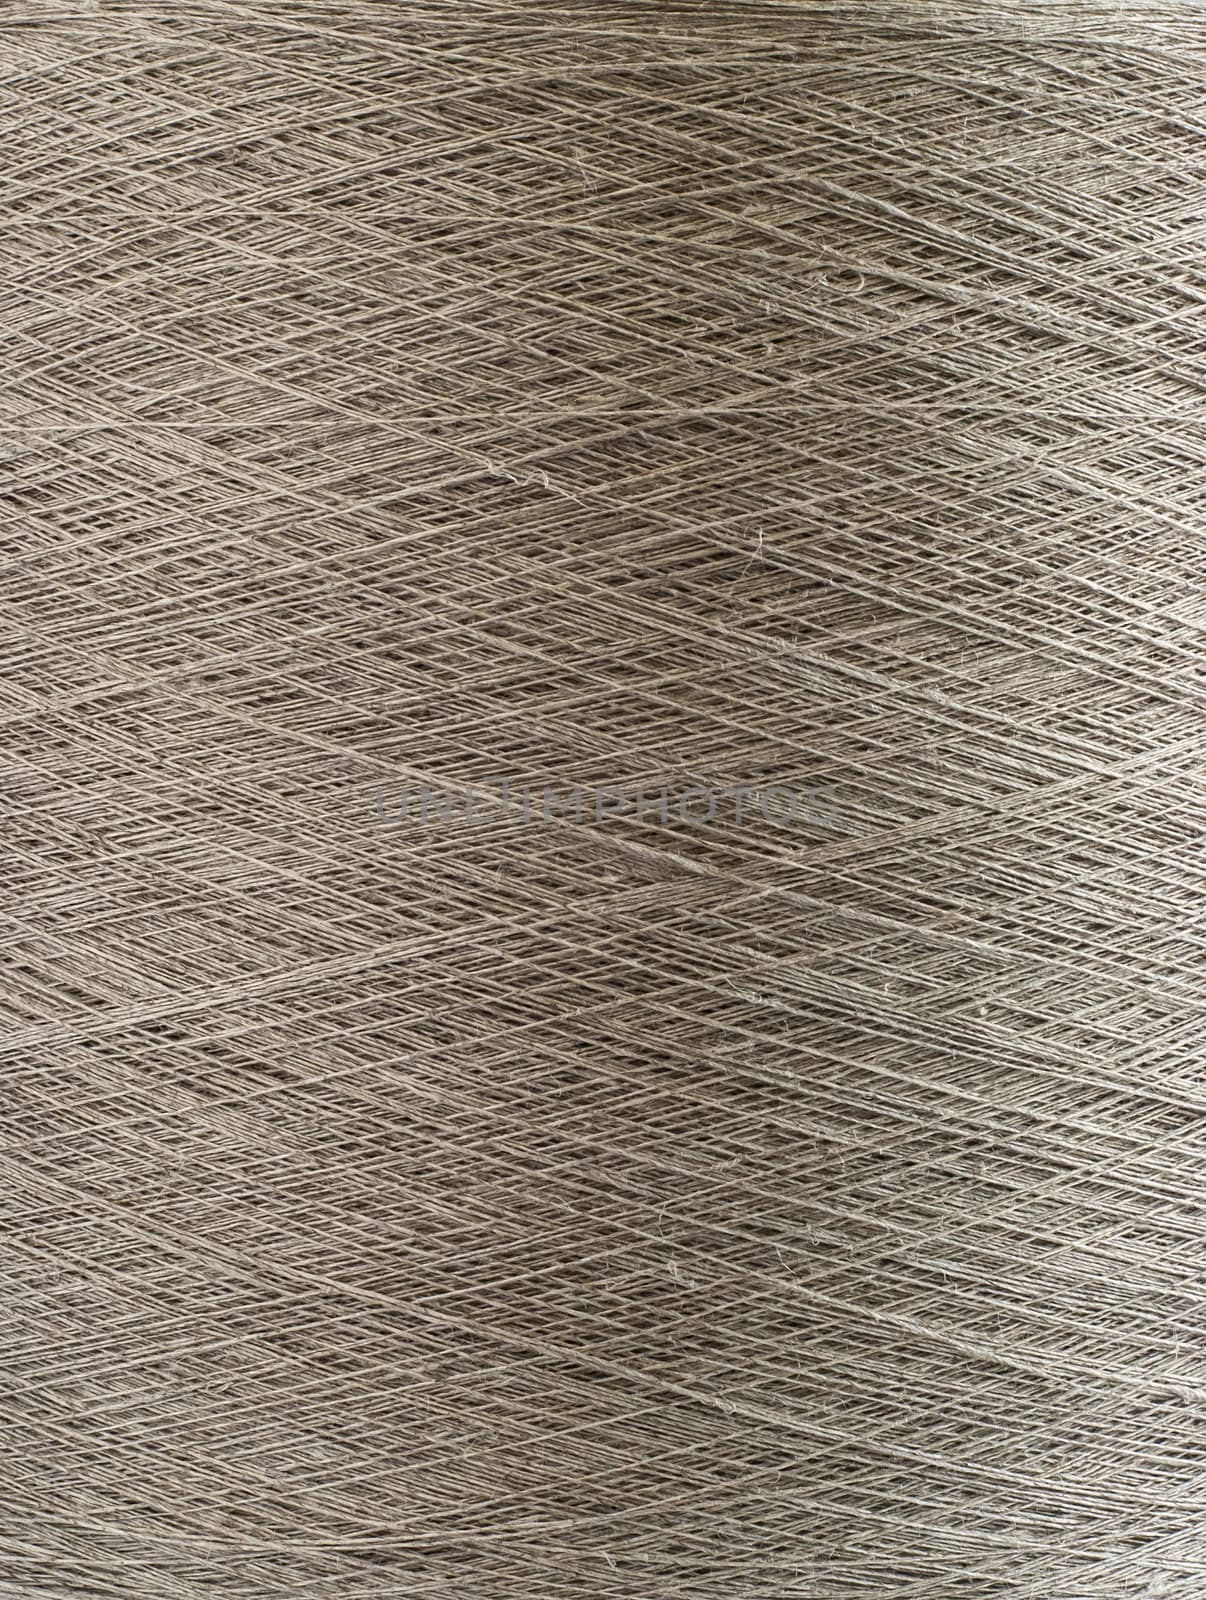 Natural linen yarn bobbin closeup by varbenov